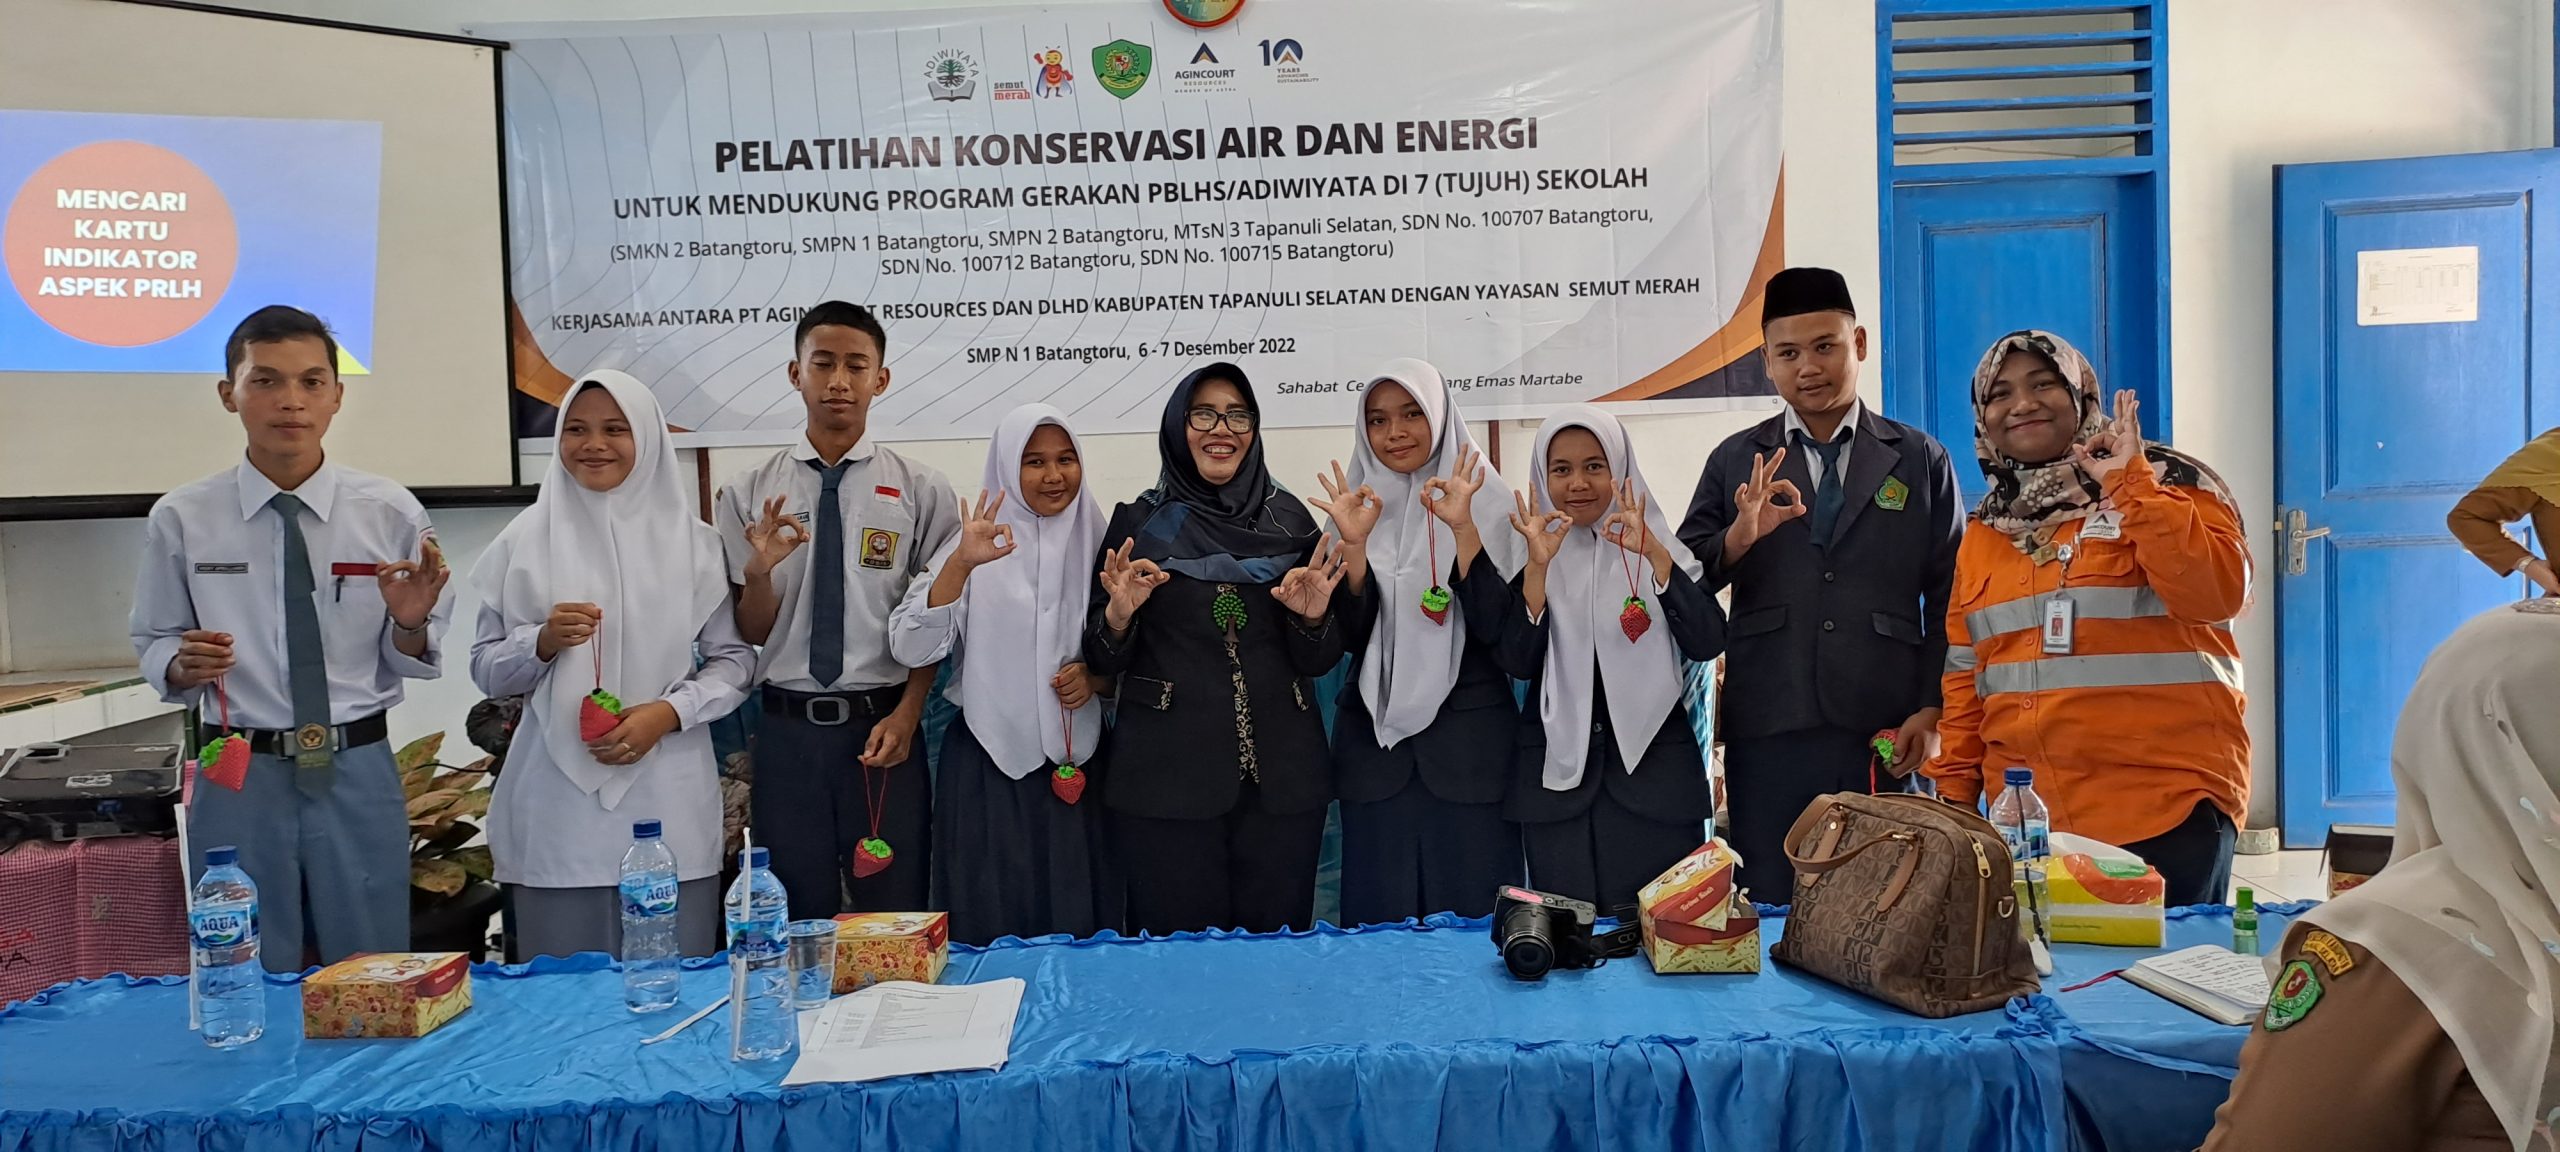 Agincourt Resources Beri Pelatihan Konservasi Air dan Energi untuk 7 Sekolah Adiwiyata Binaan